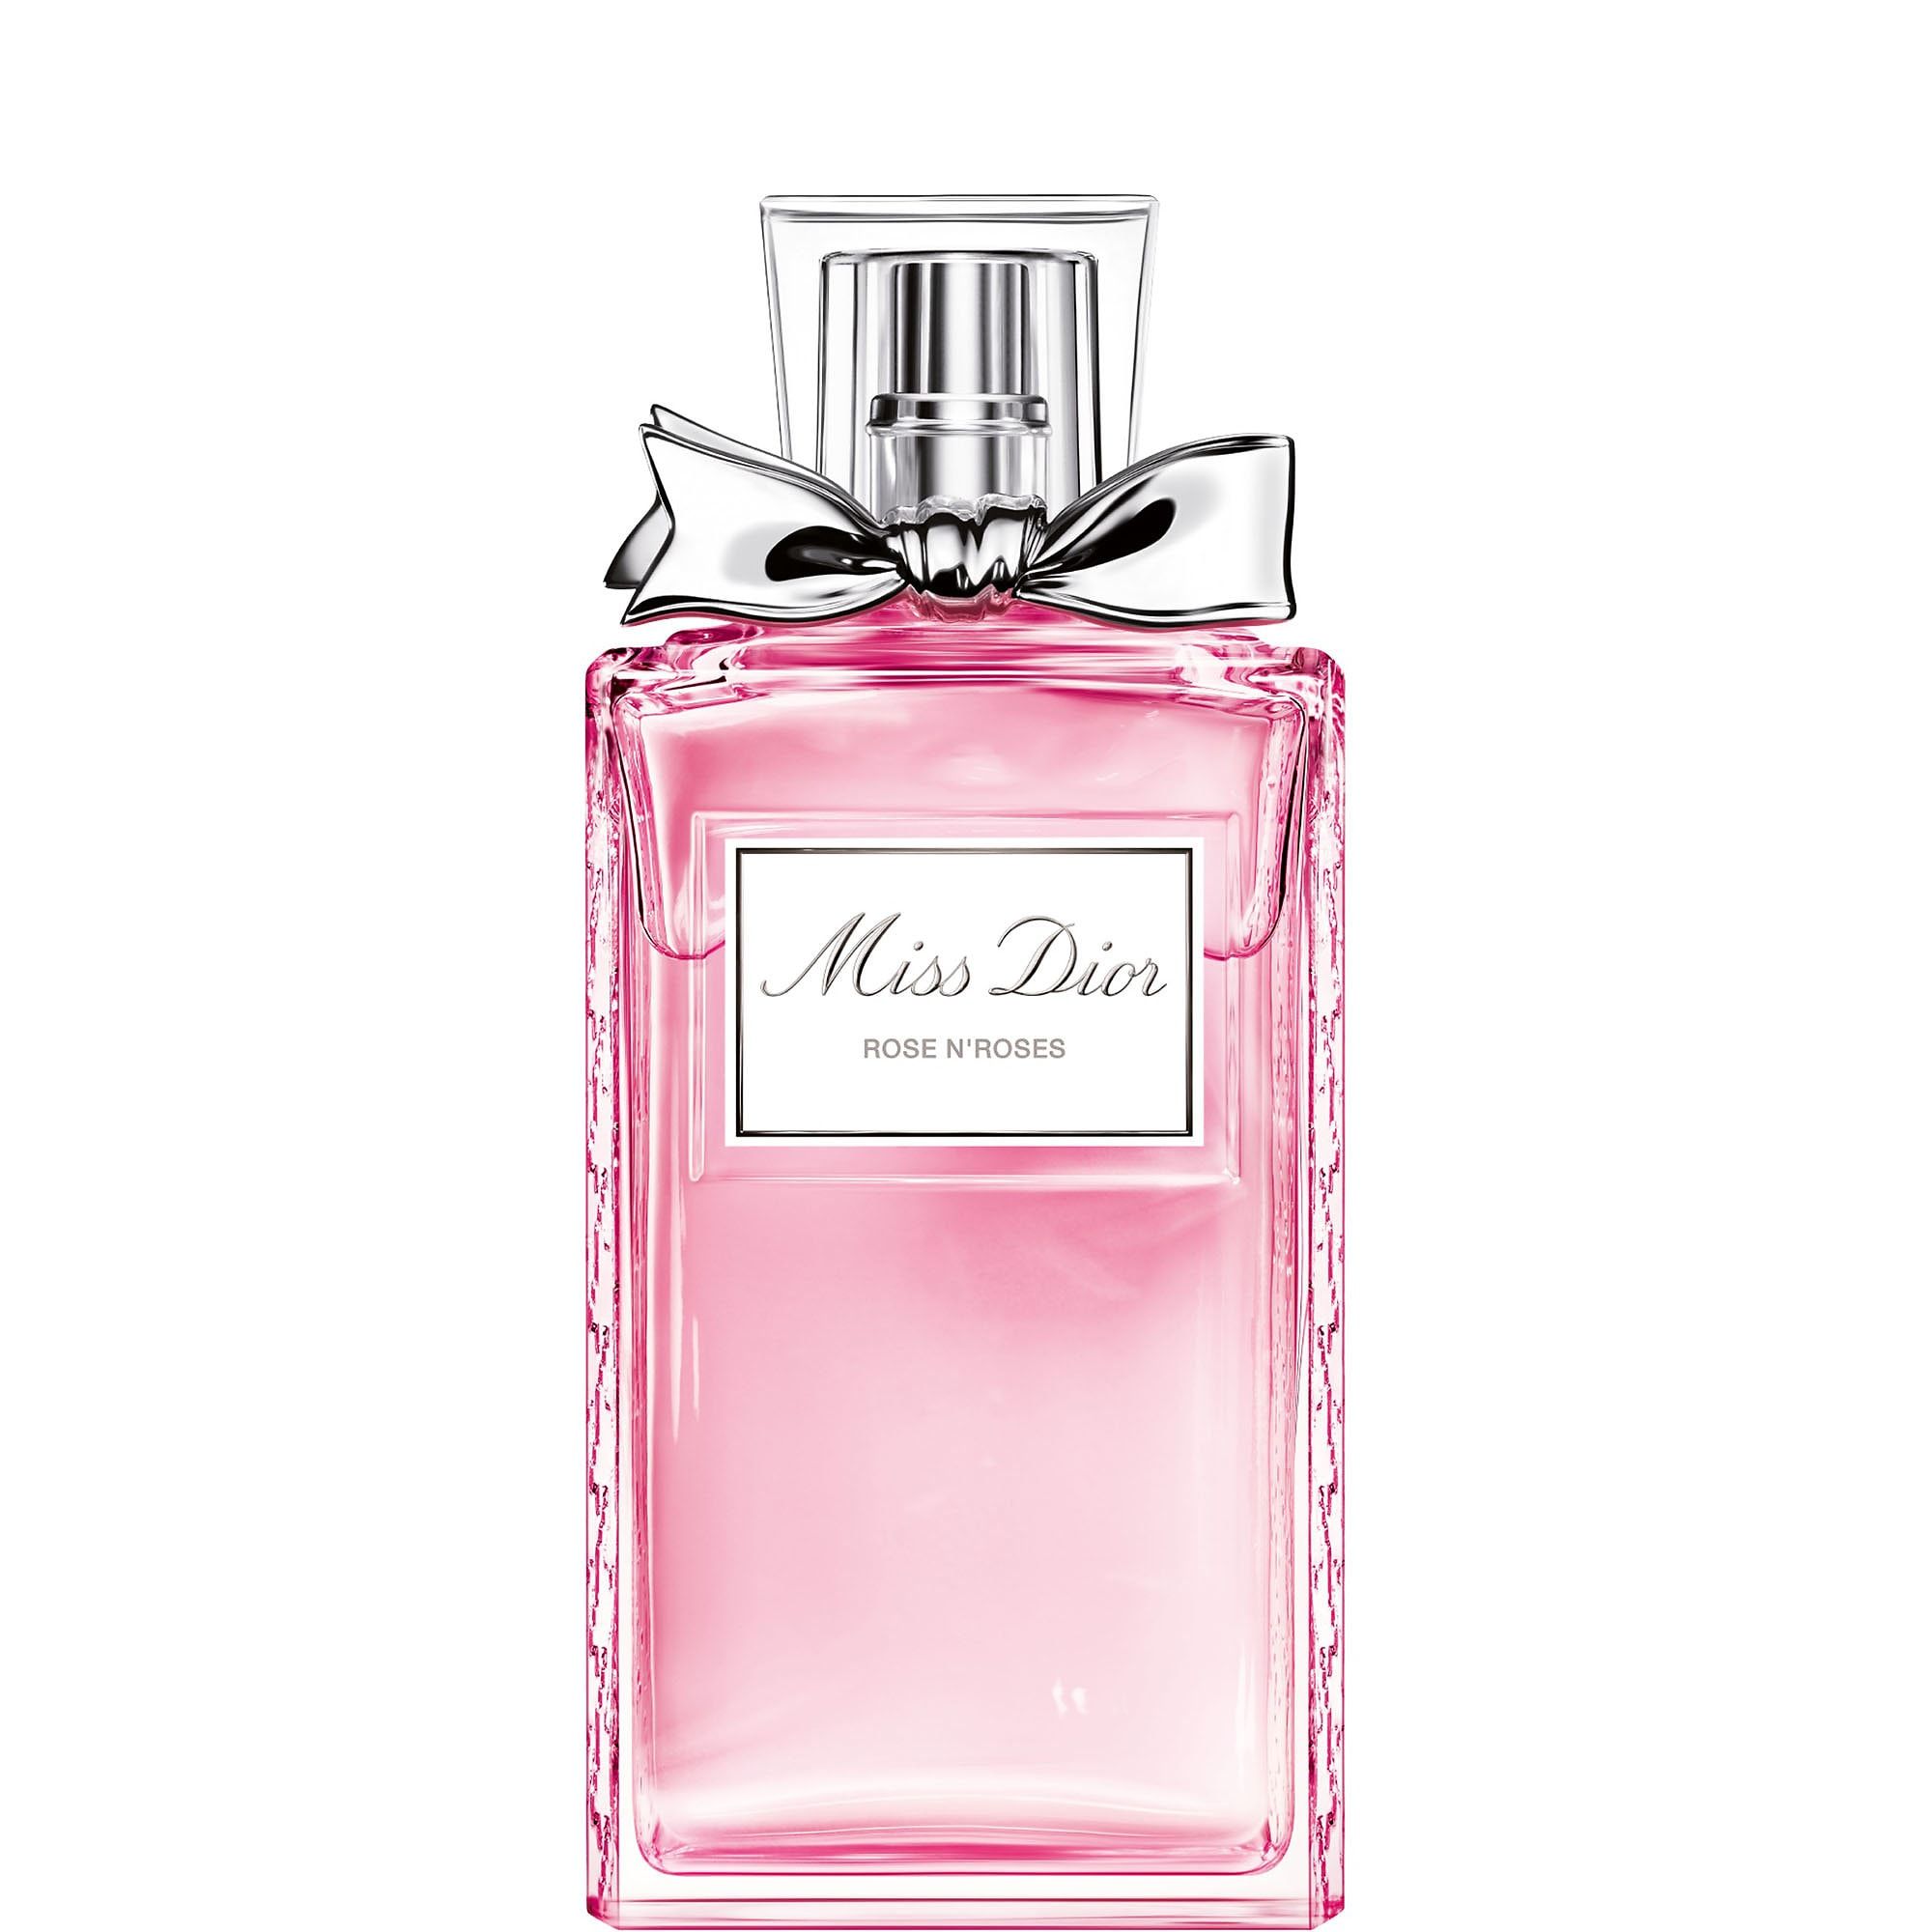 perfumes similar to miss dior